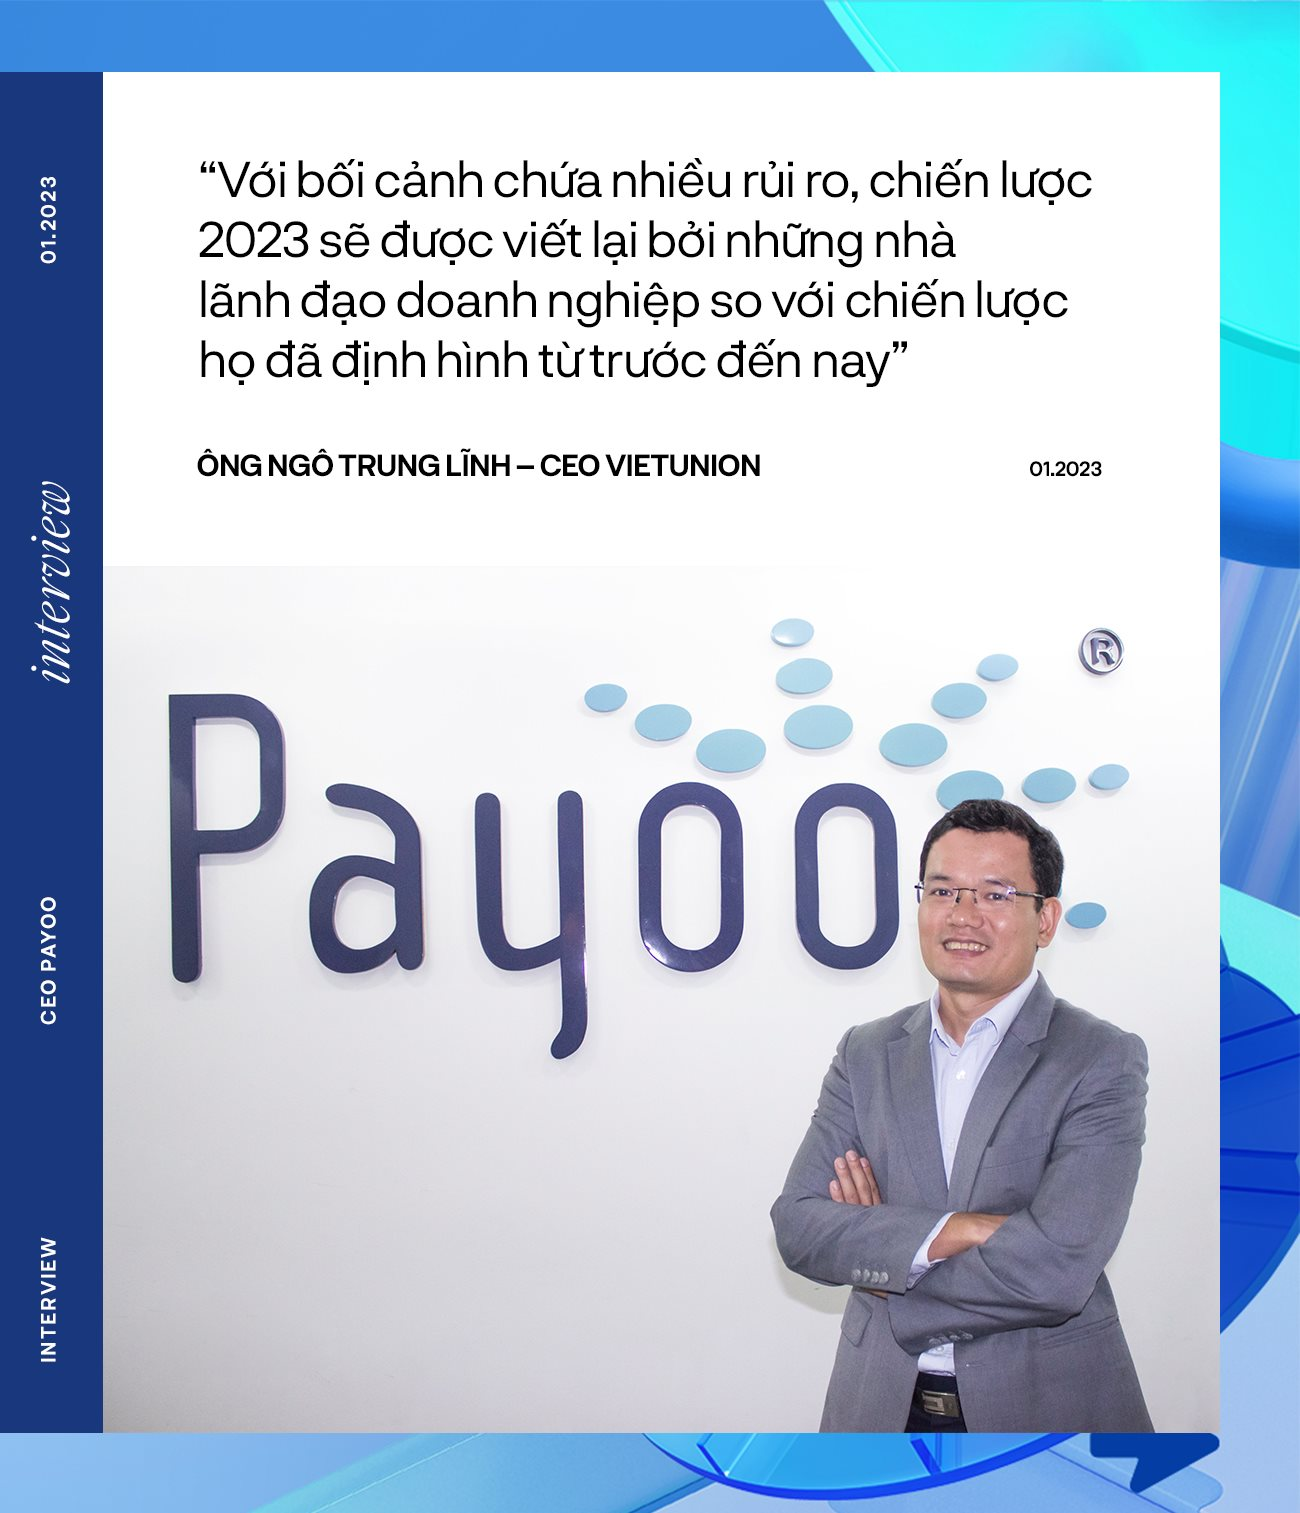 CEO Payoo nói về chiến lược “Ít người, đánh ít mà đánh khó” và làn gió ngược của thanh toán điện tử giữa mùa đông suy thoái - Ảnh 6.